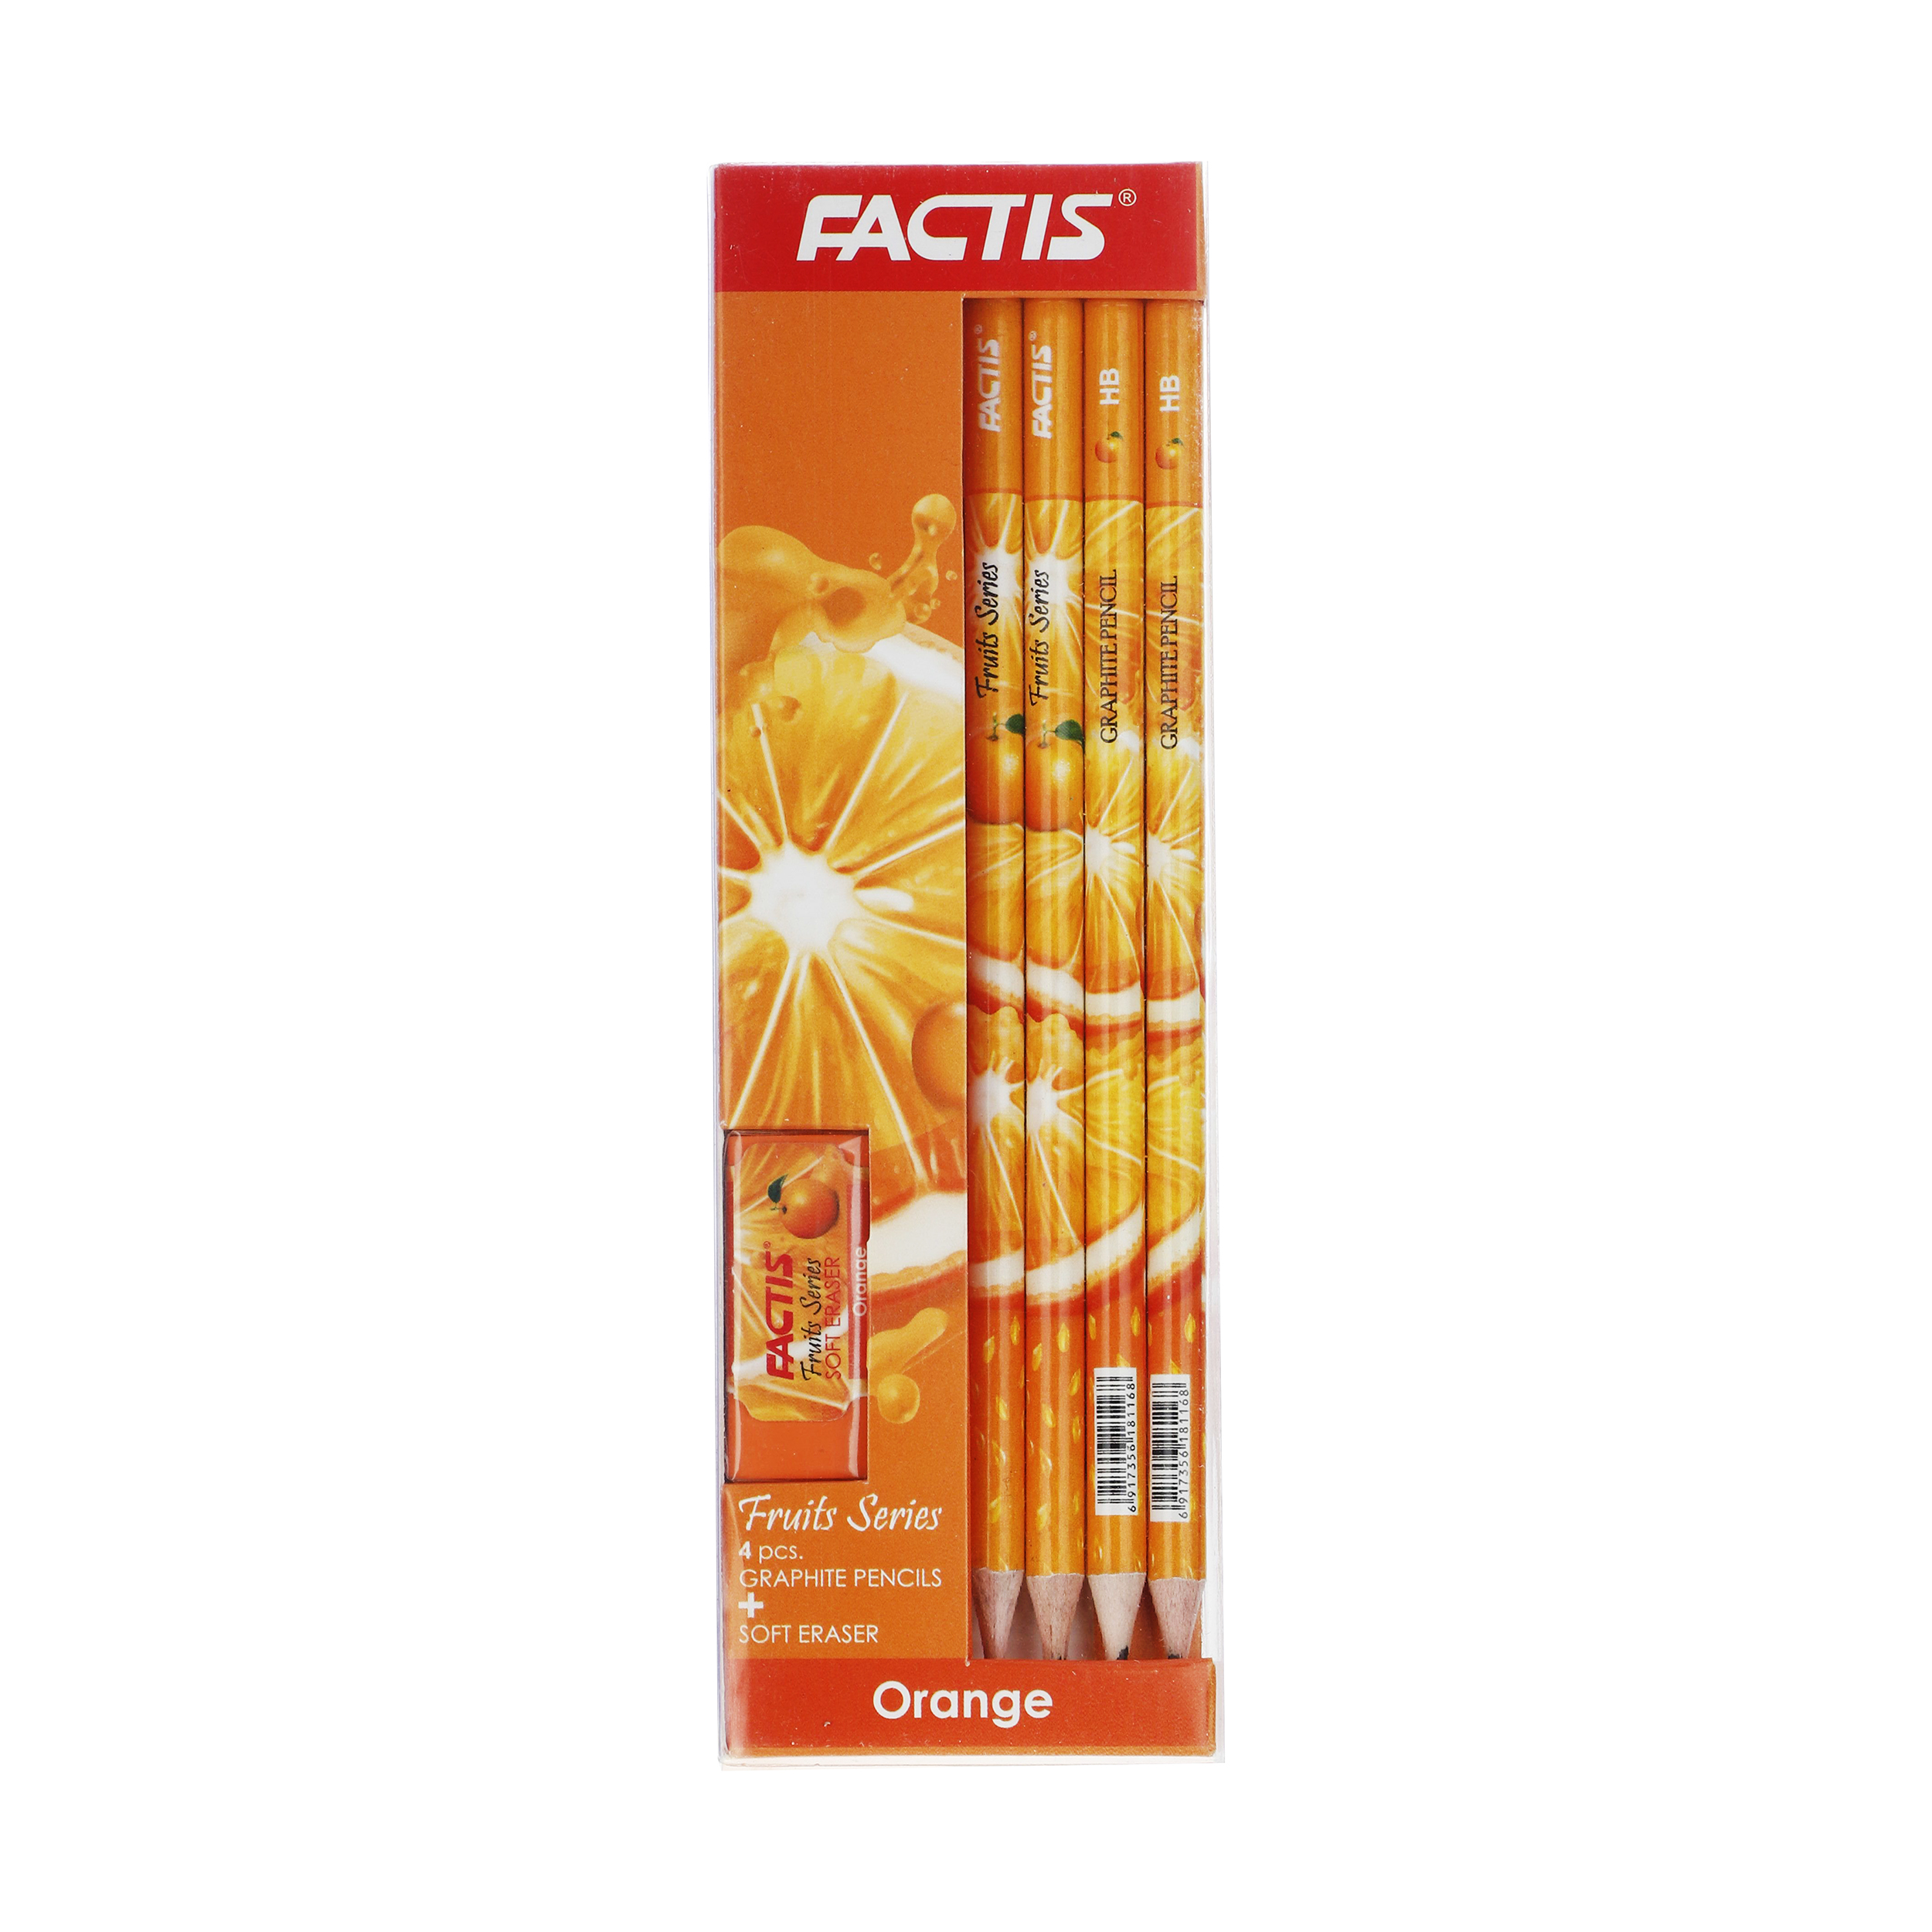 نکته خرید - قیمت روز مداد فکتیس مدل Orange بسته 4 عددی به همراه پاک کن خرید